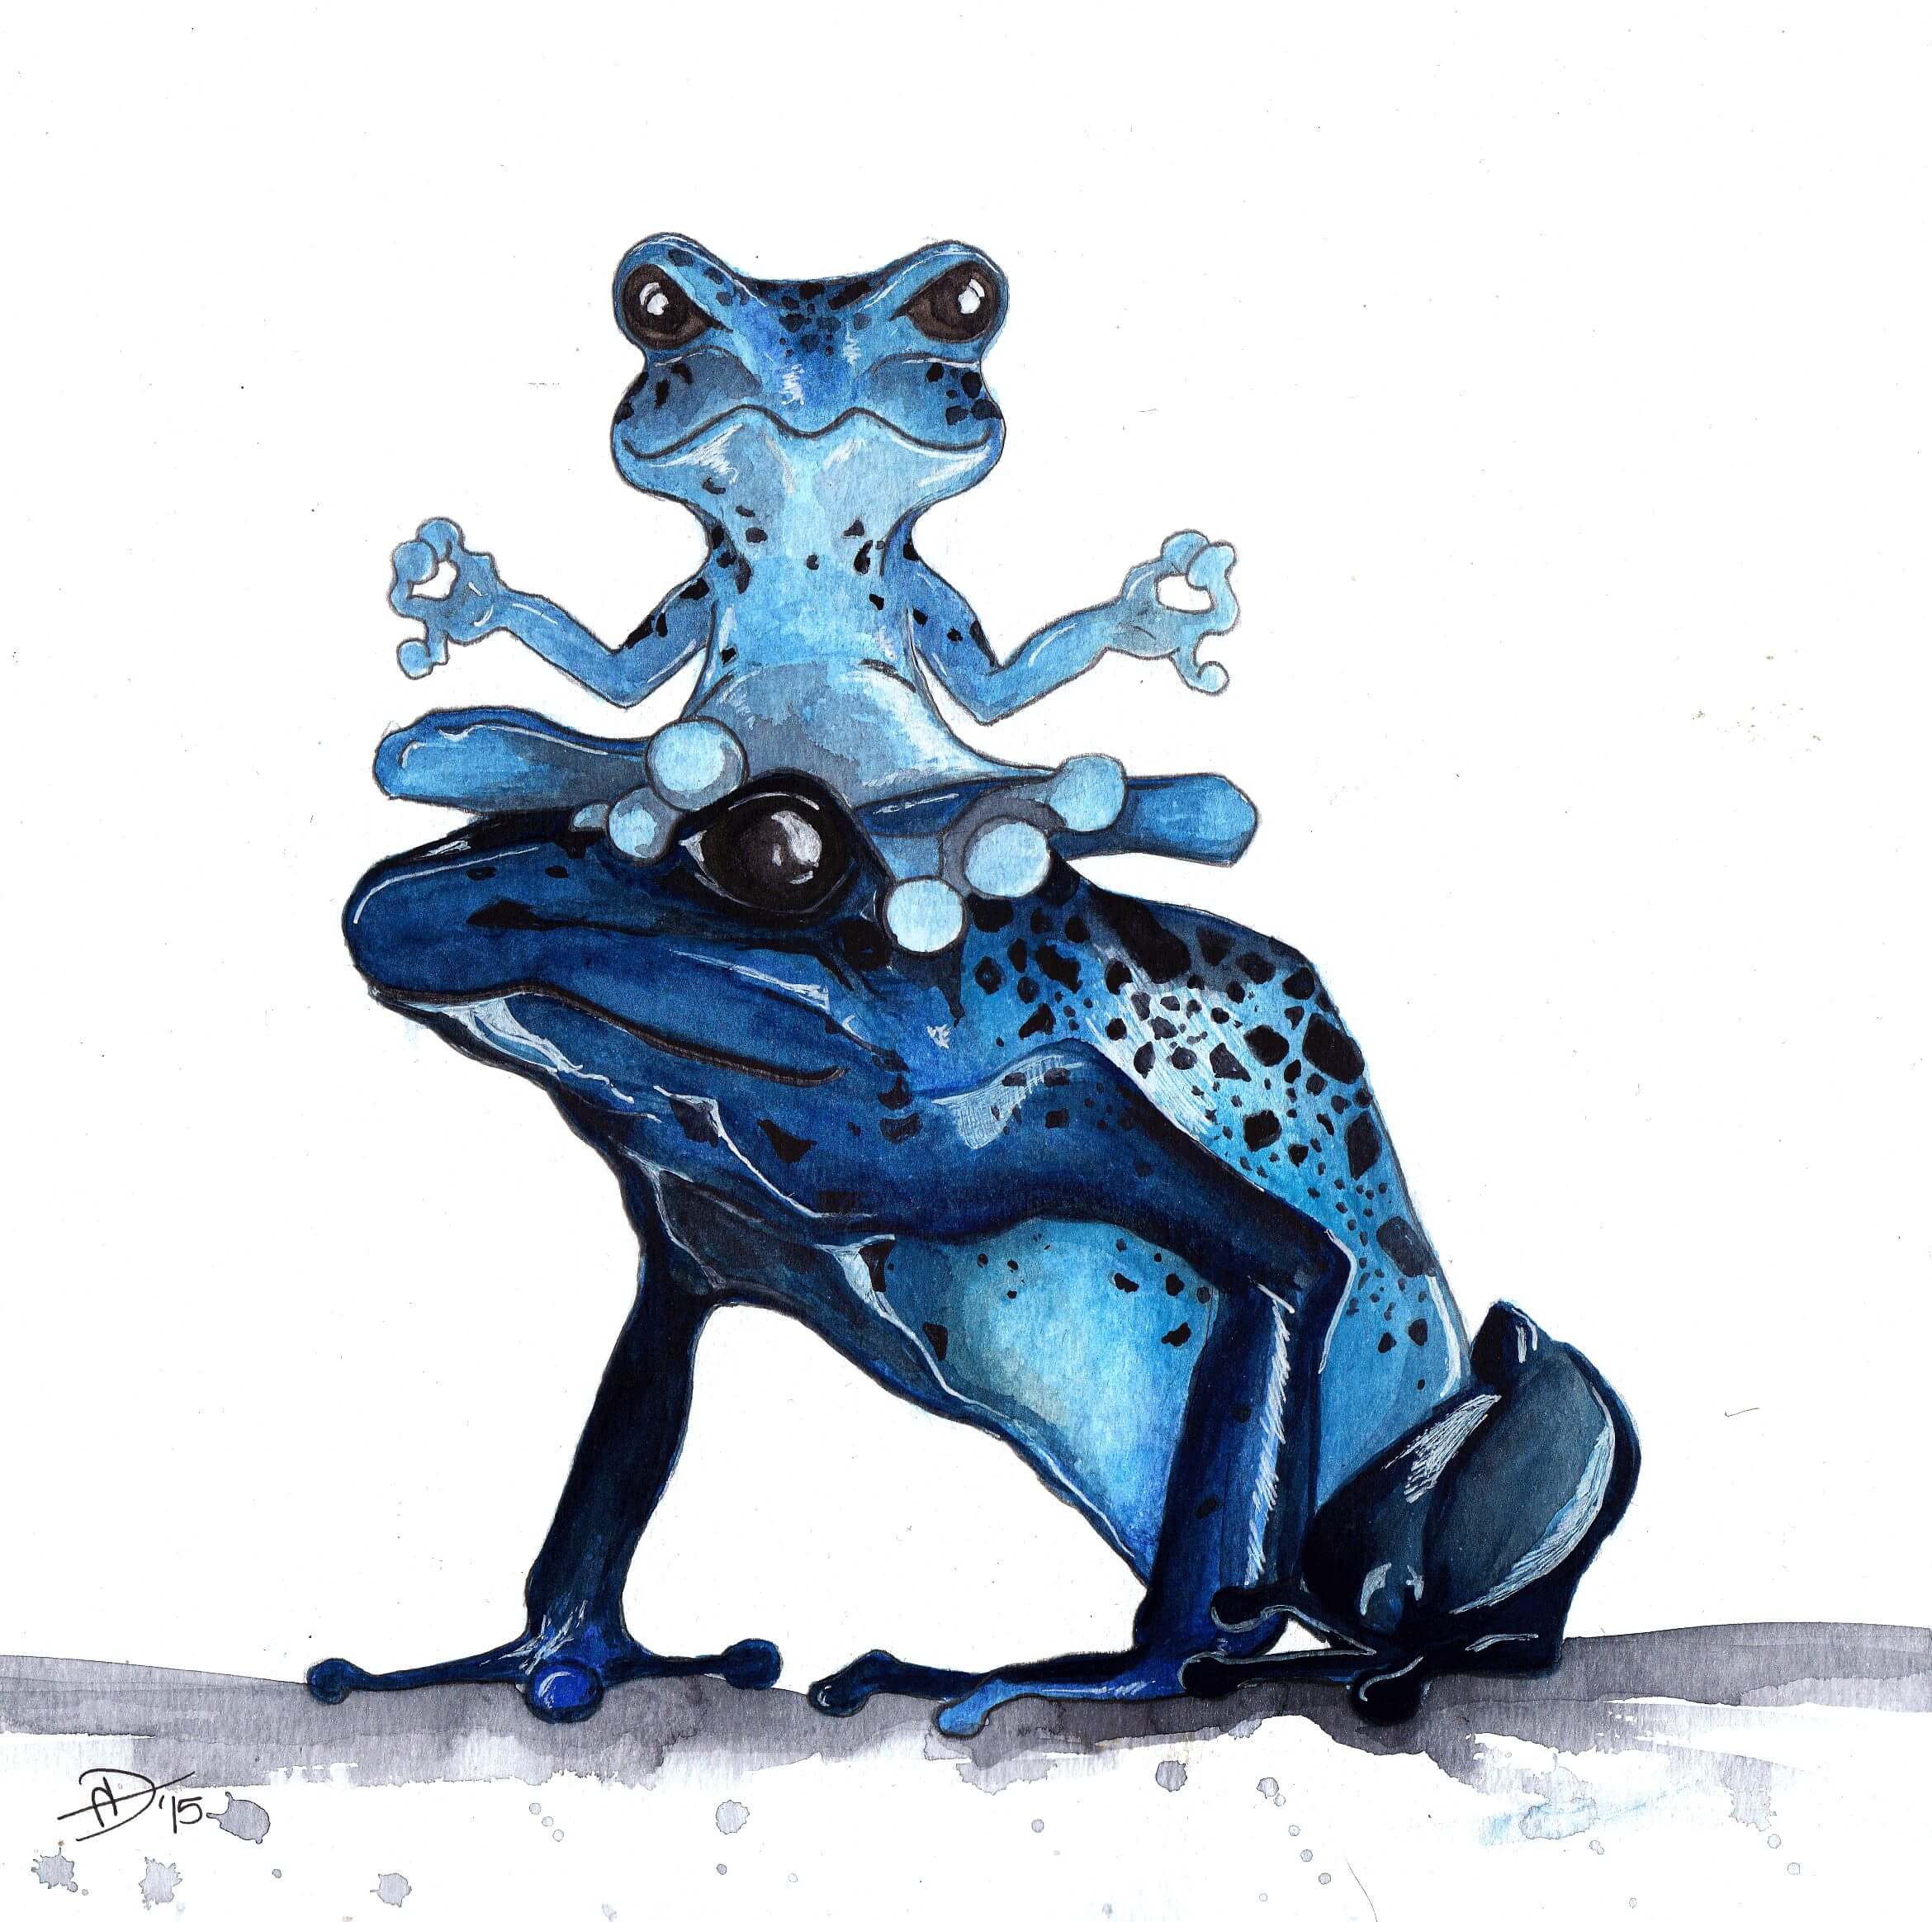 Meditating Frogs